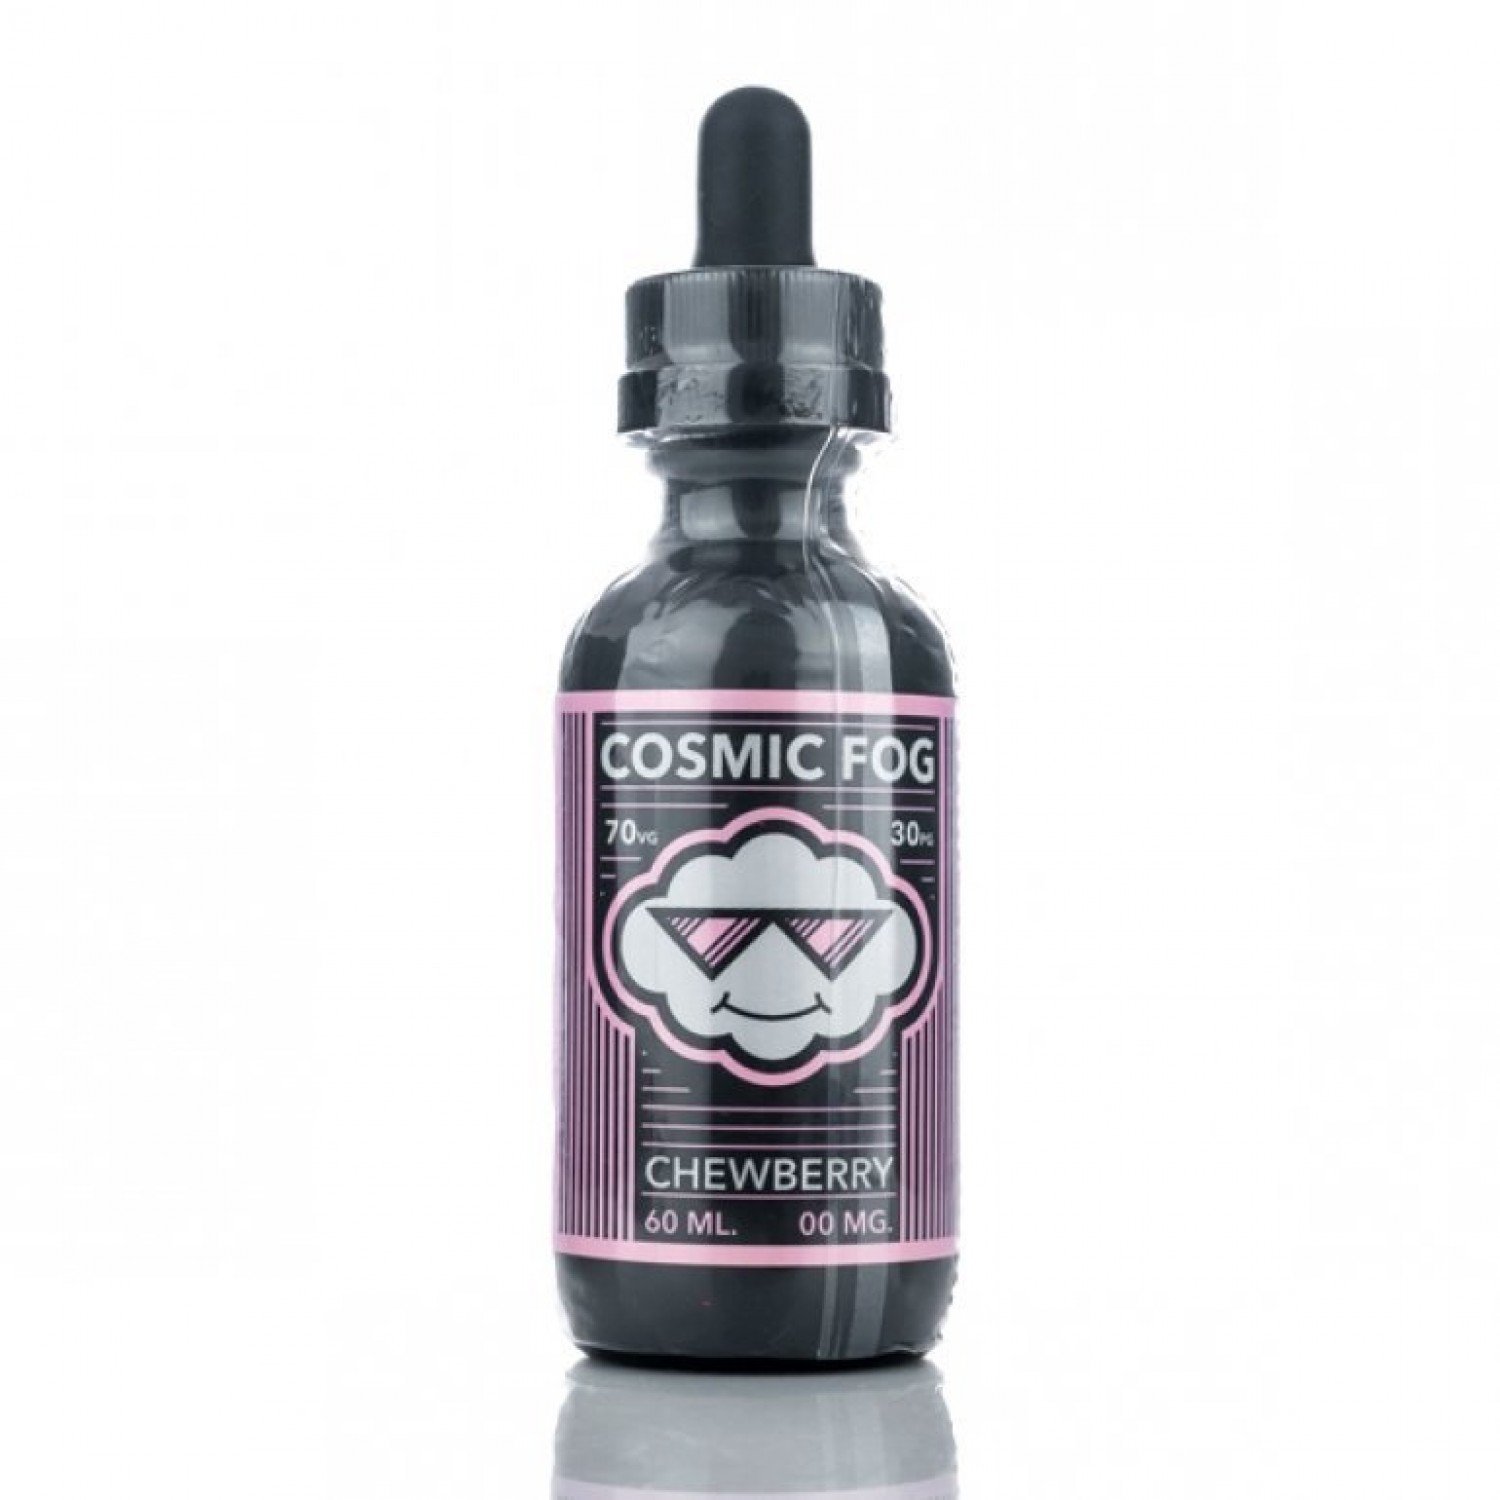 Cosmic Fog - Chewberry 60 ml Premium Likit